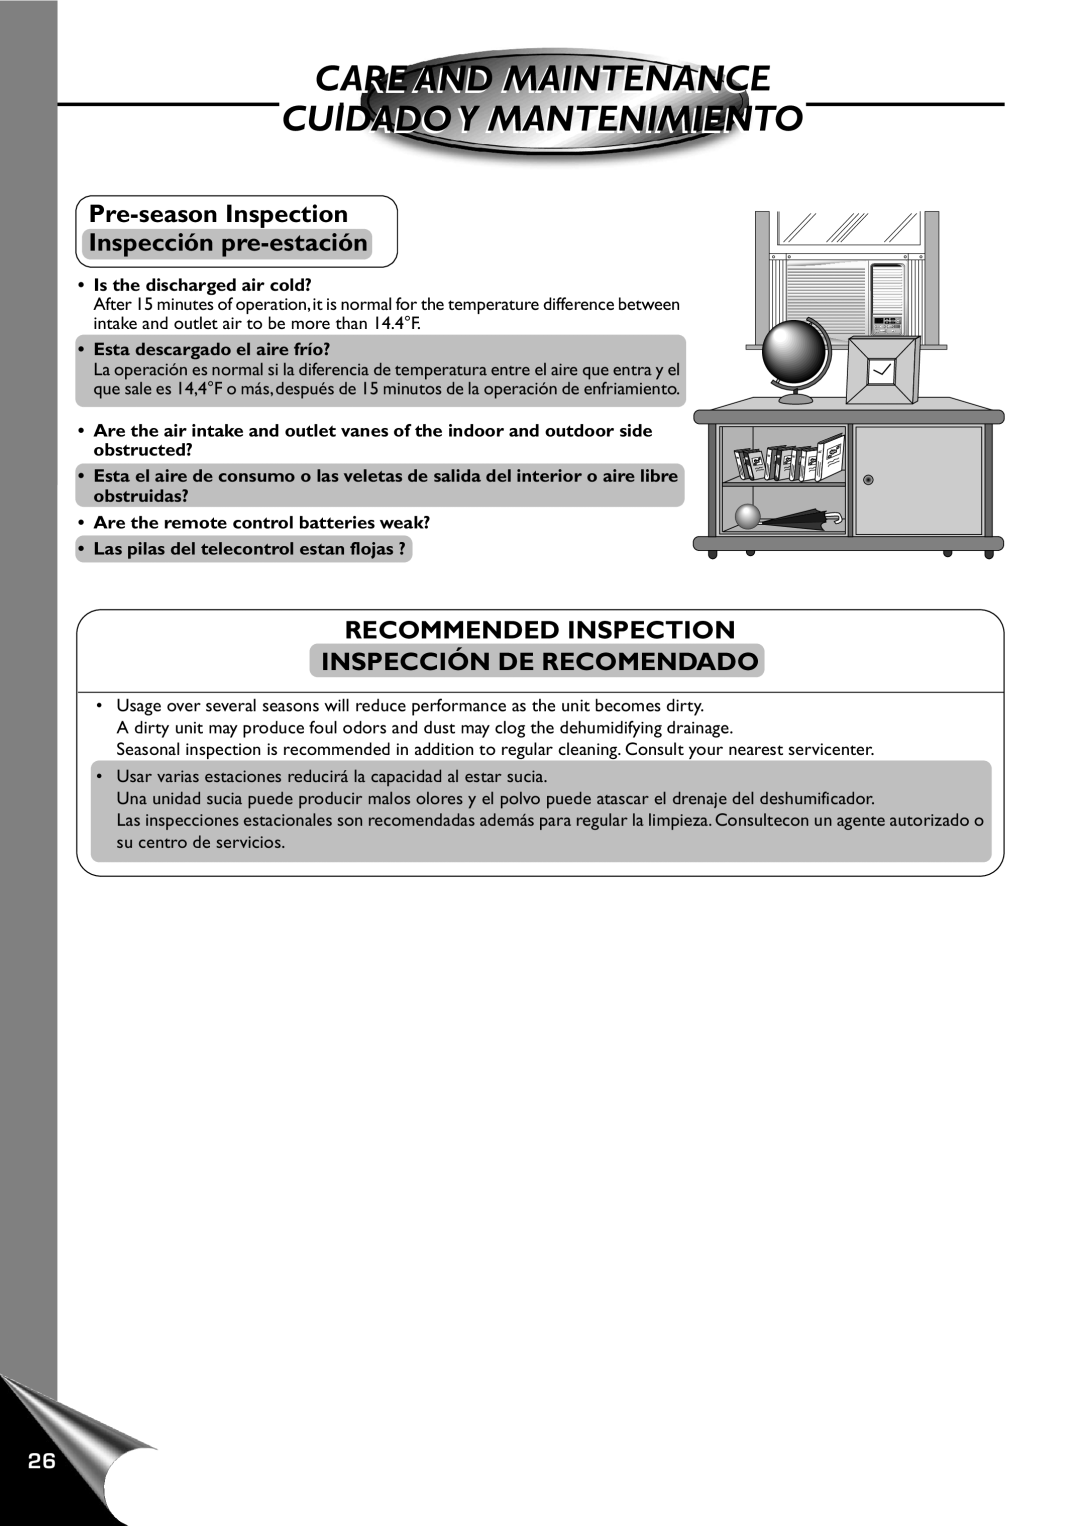 Panasonic CW-XC120AU manual Pre-seasonInspection Inspección pre-estación, Recommended Inspection Inspección De Recomendado 